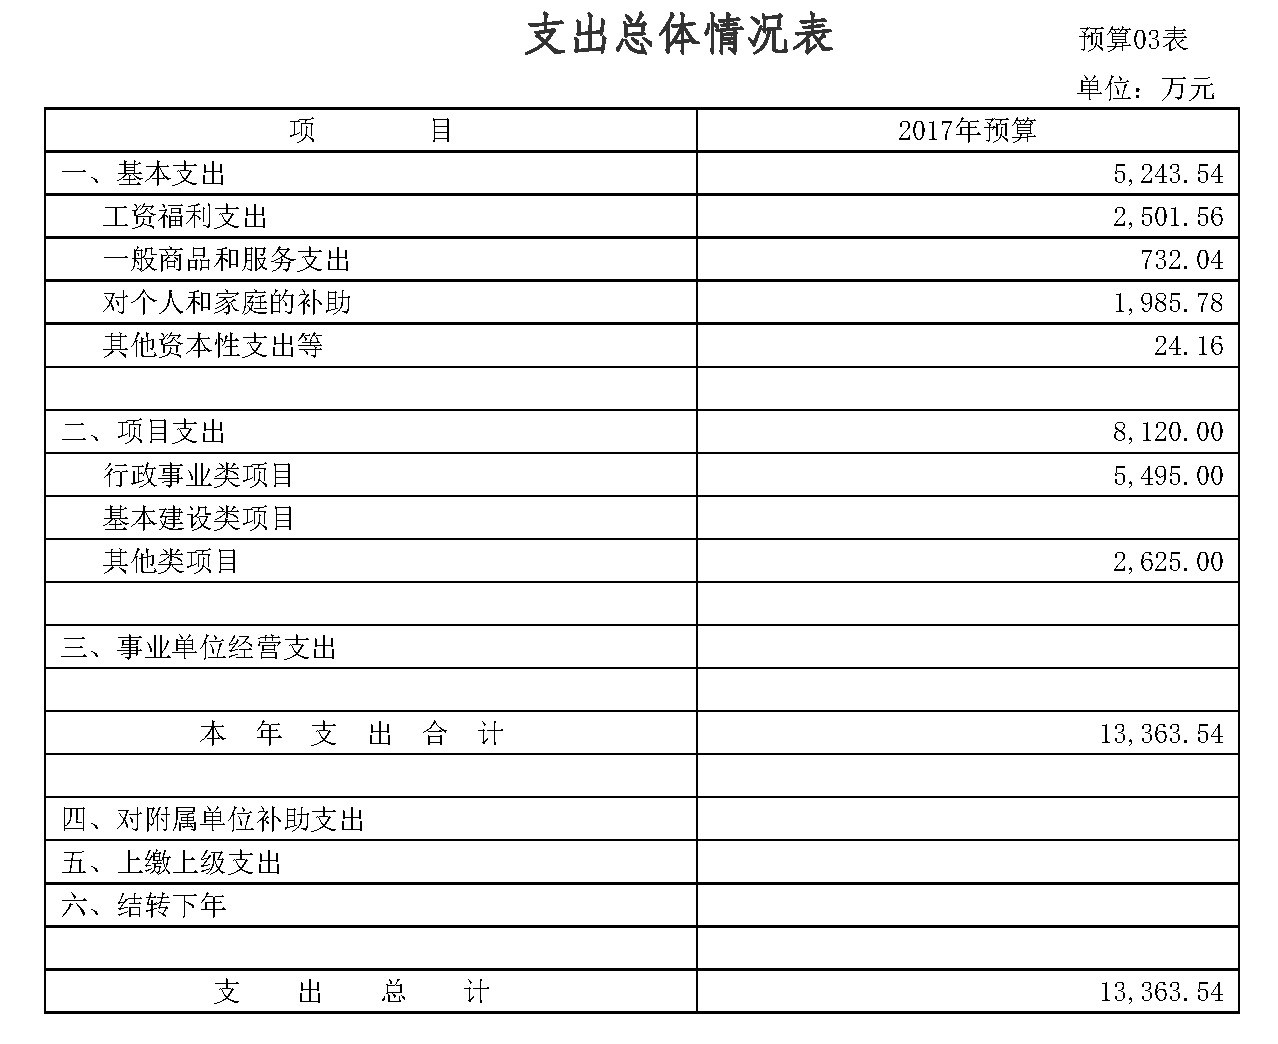 广东省住房和城乡建设厅2017年部门预算公开3